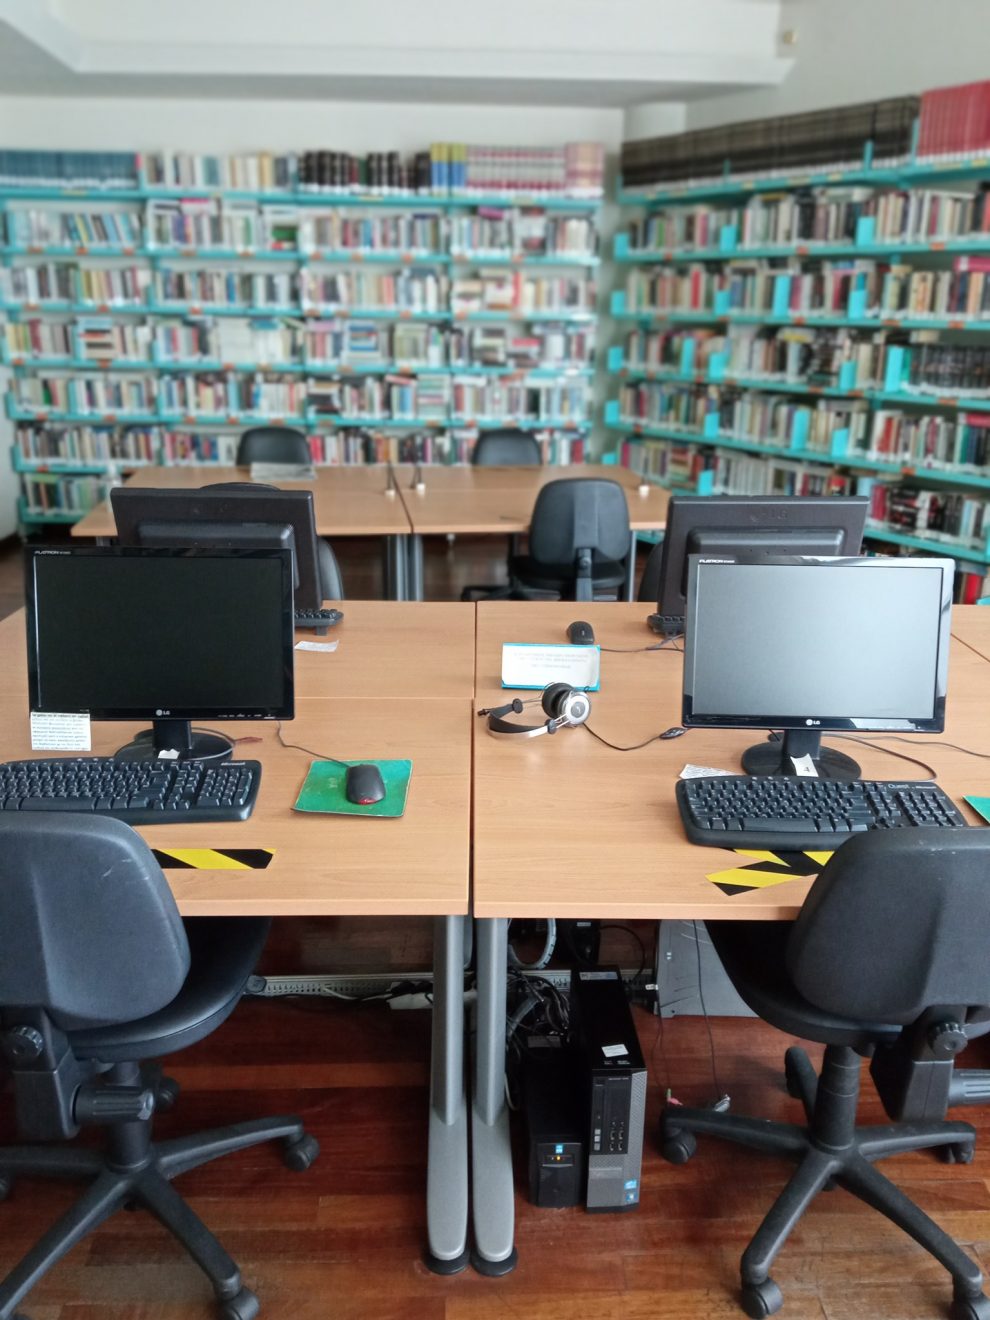 Δημόσια Βιβλιοθήκη Καλαμάτας: Εμπλουτίστηκε με αξιόλογες εκδόσεις μέσω  του Future Library